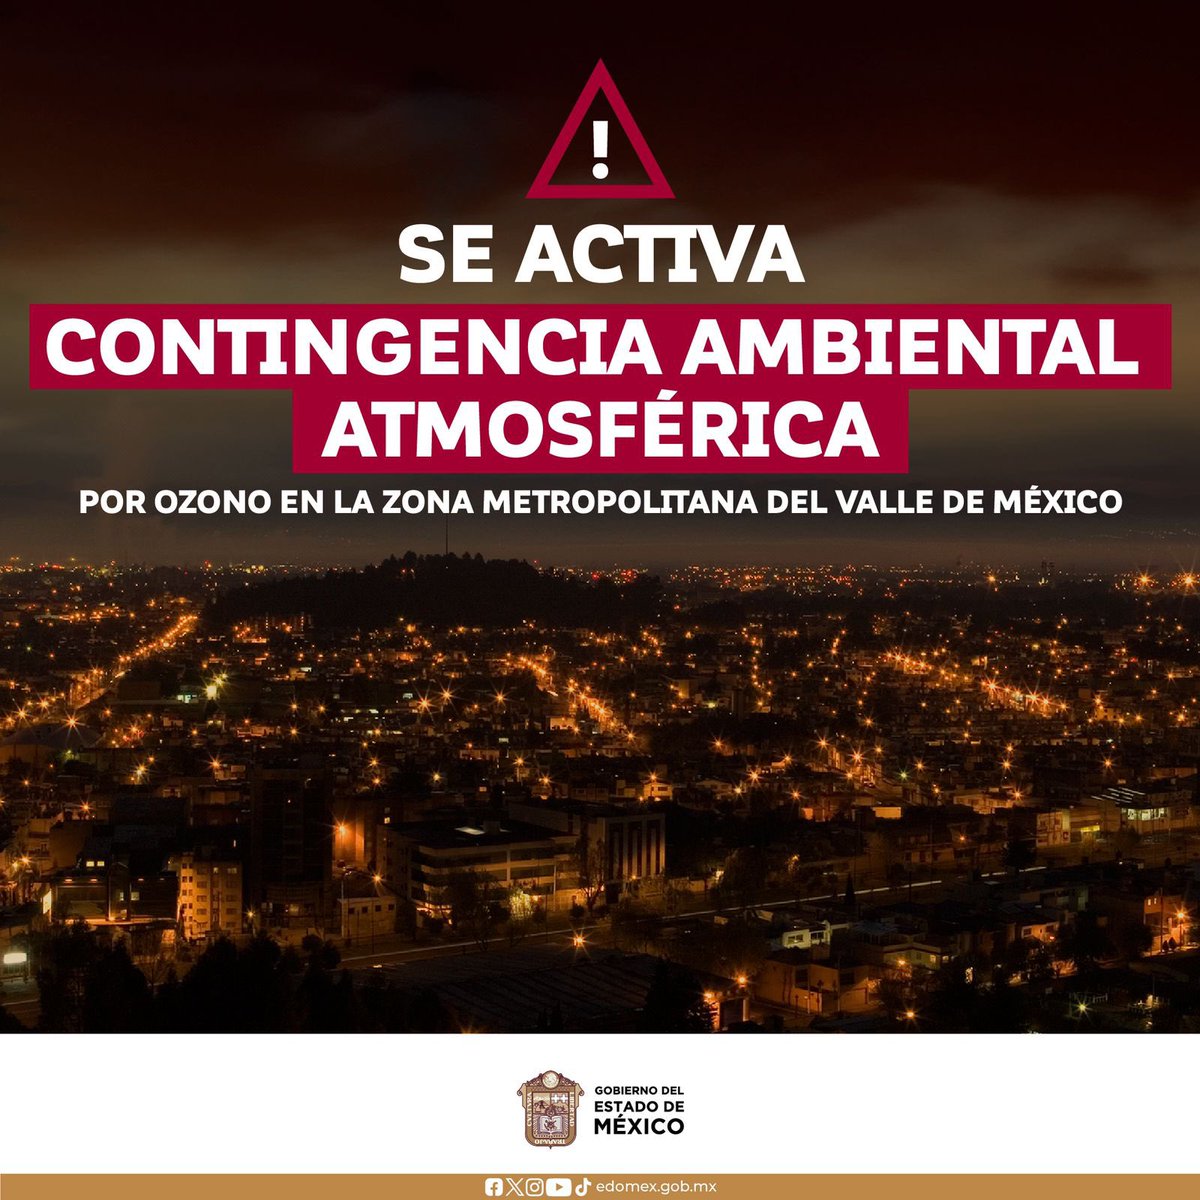 Toma tus precauciones! Se activa Contingencia Ambiental Atmosférica en la Zona Metropolitana del Valle de México. Protege tu salud e infórmate a través de fuentes oficiales.